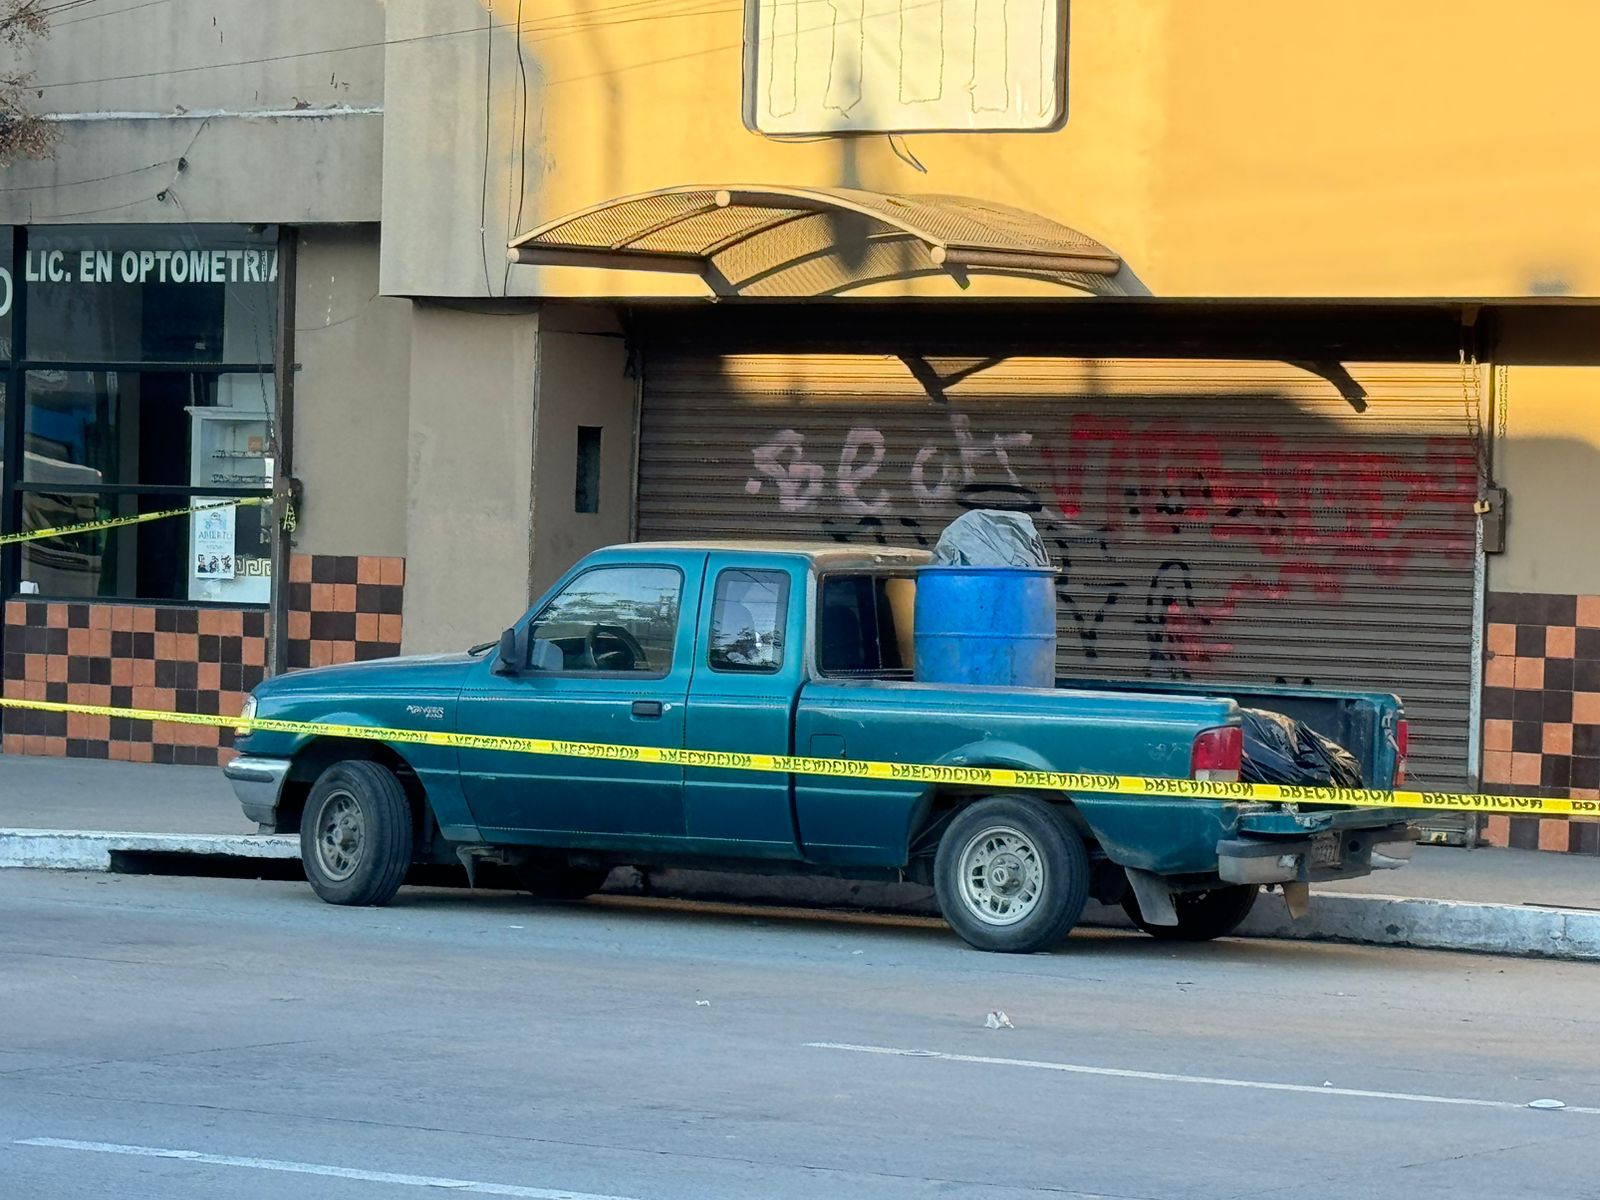 [VIDEO] Encuentran un cuerpo "entambado" sobre un vehículo abandonado: Tijuana